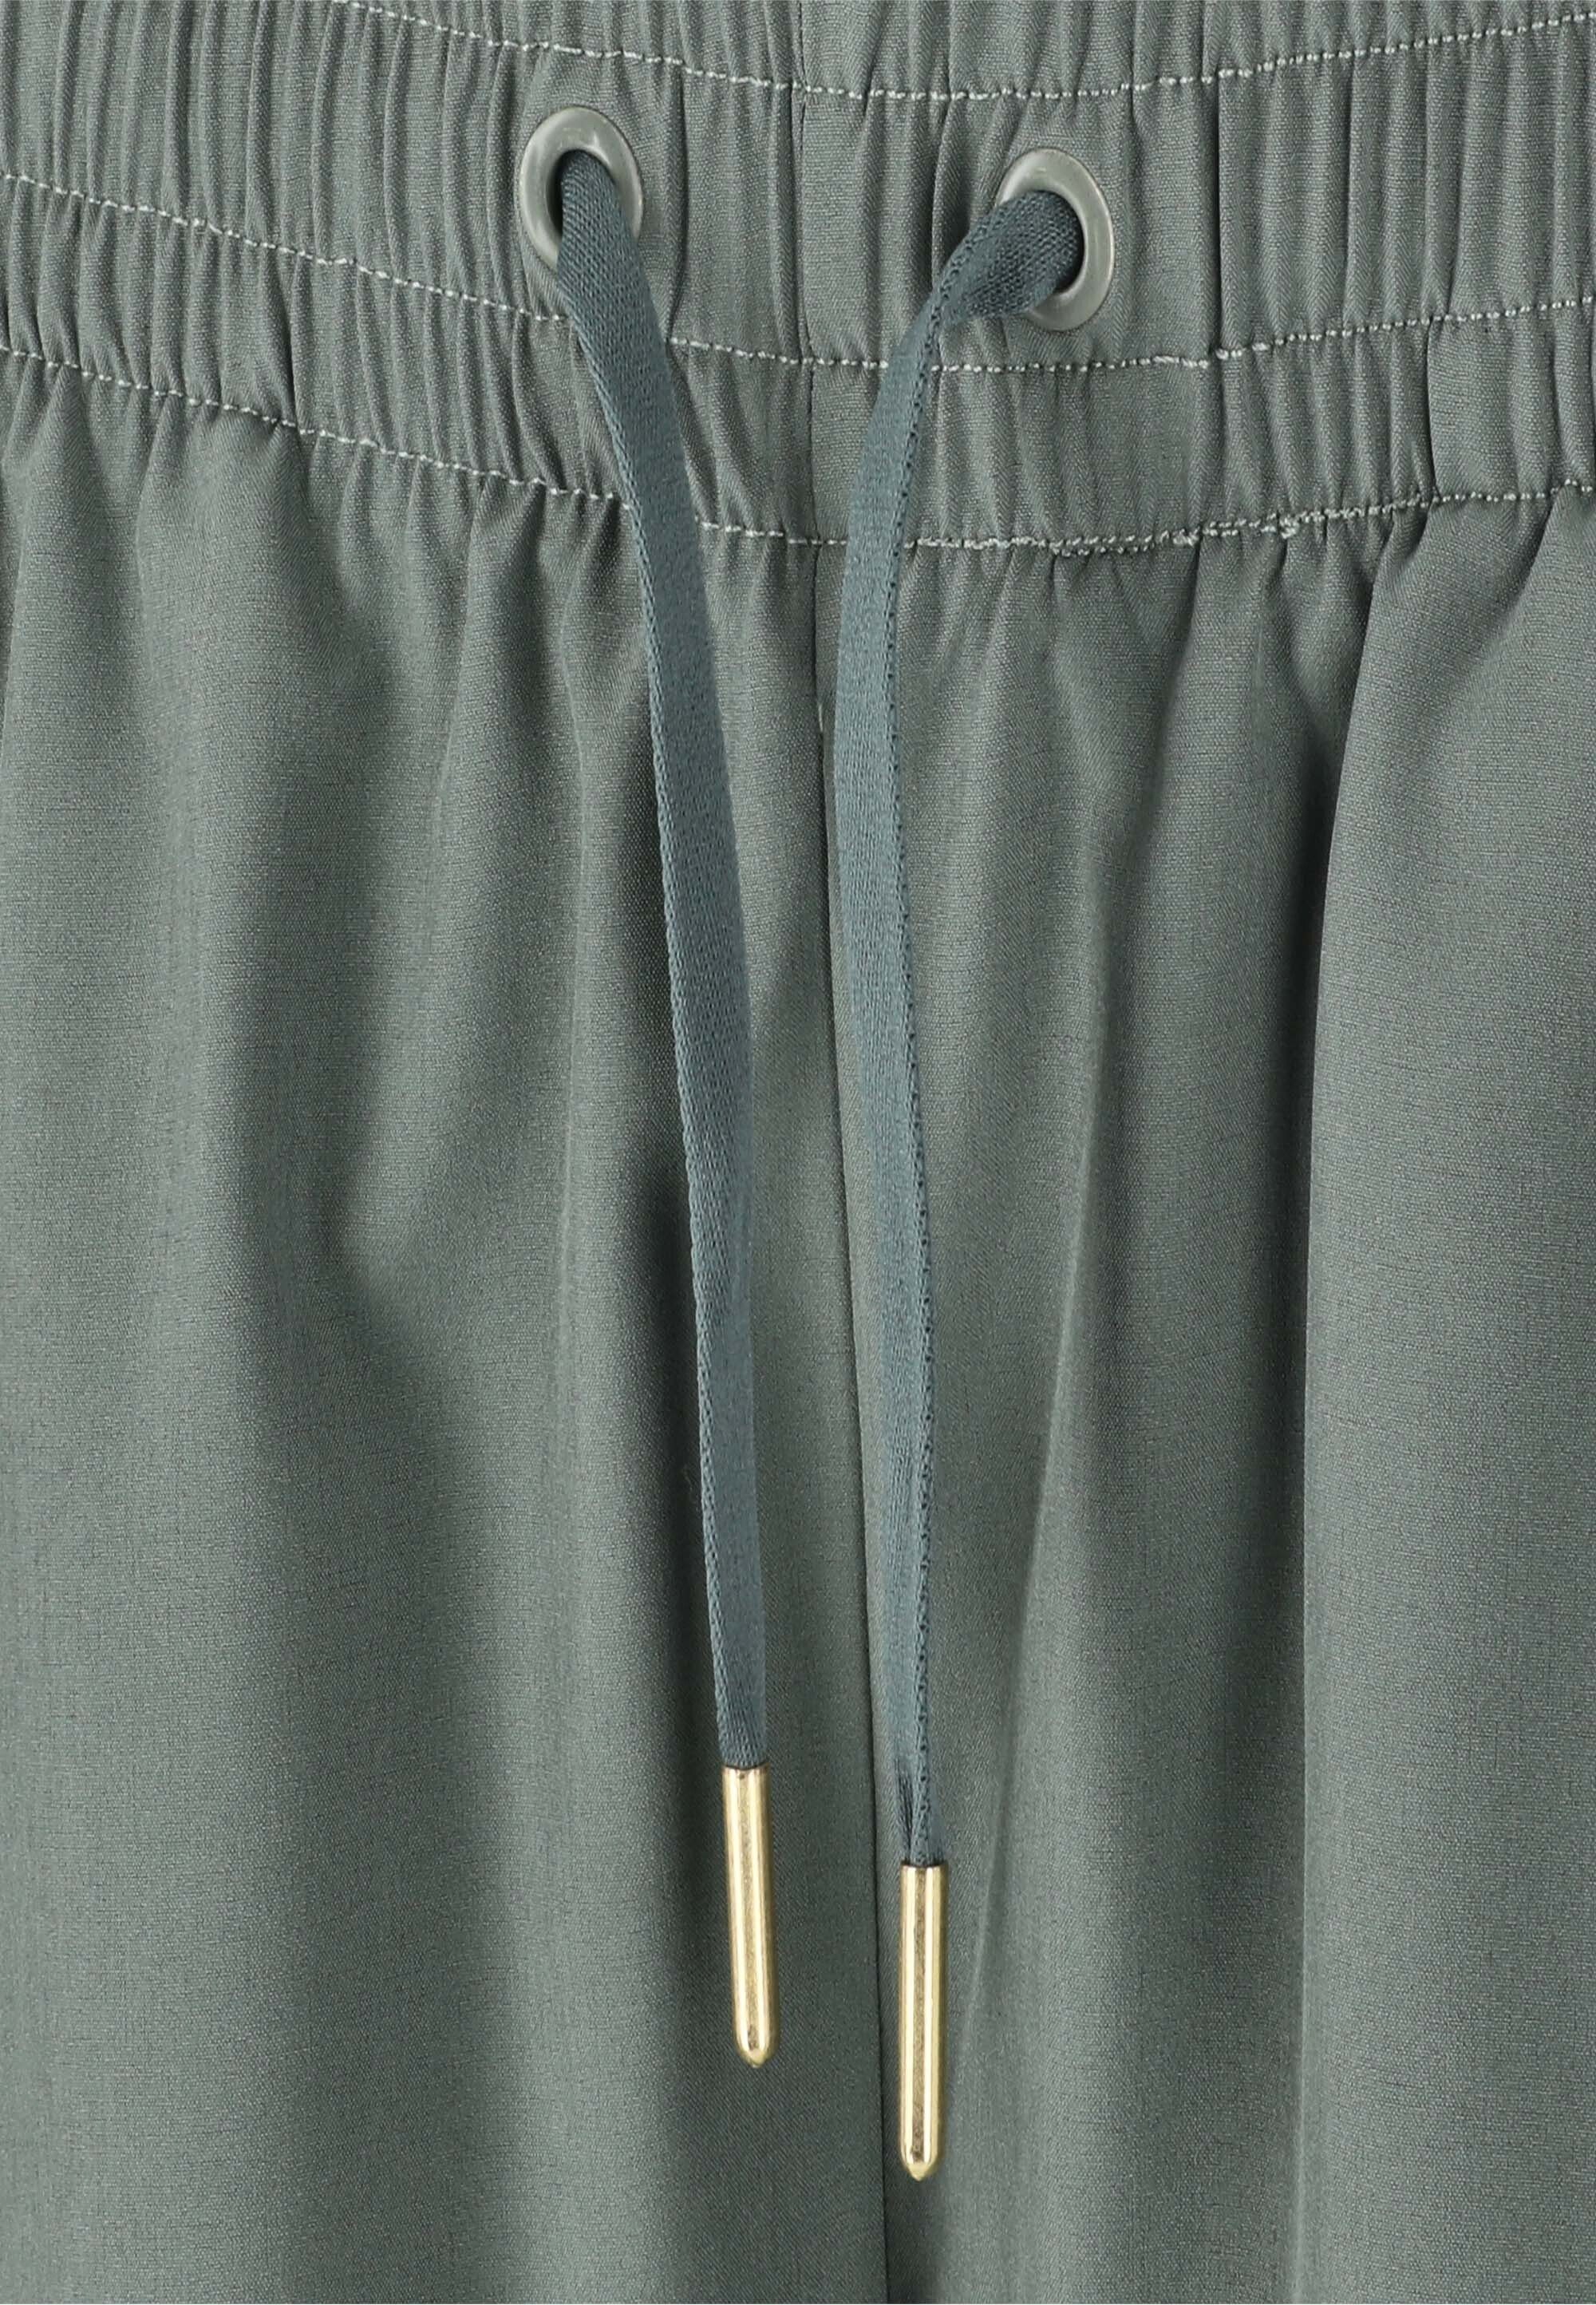 dunkelgrün ENDURANCE mit Shorts Eslaire praktischen Taschen